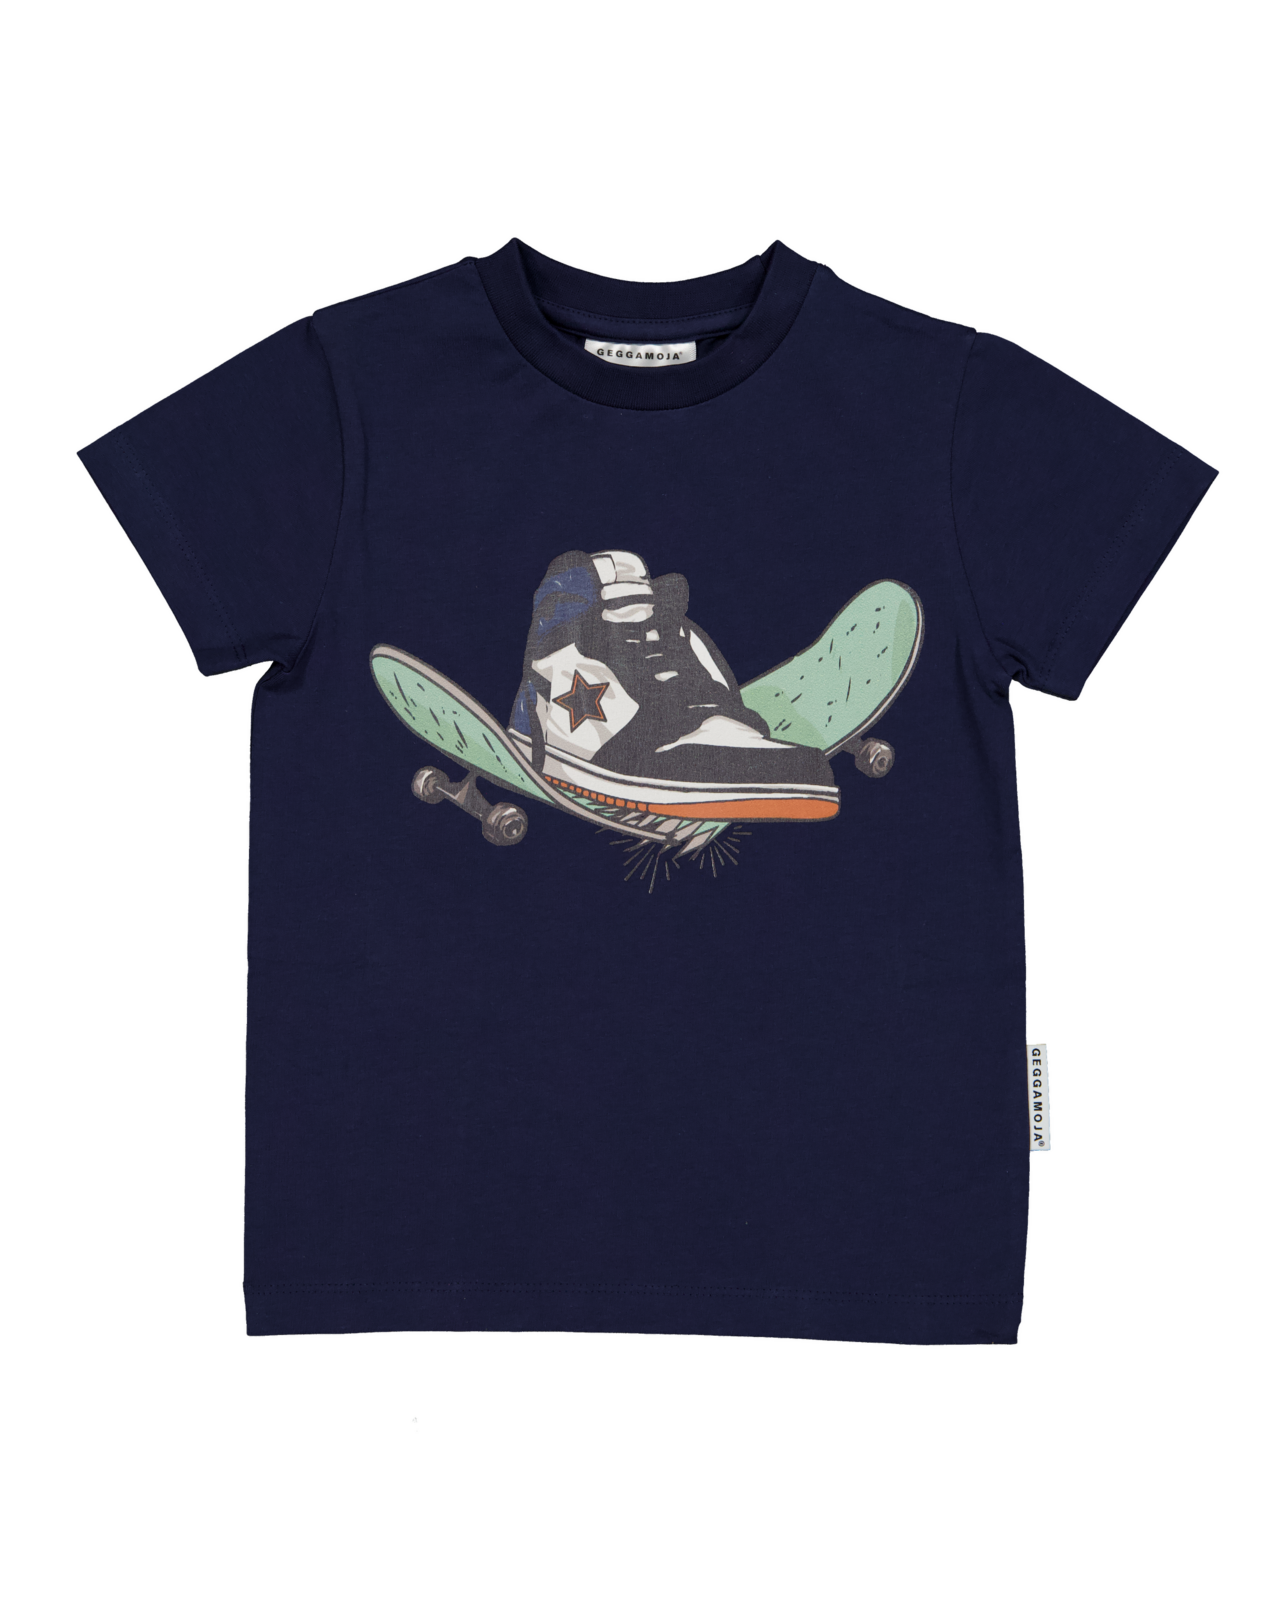 T-shirt Skate Navy 110/116